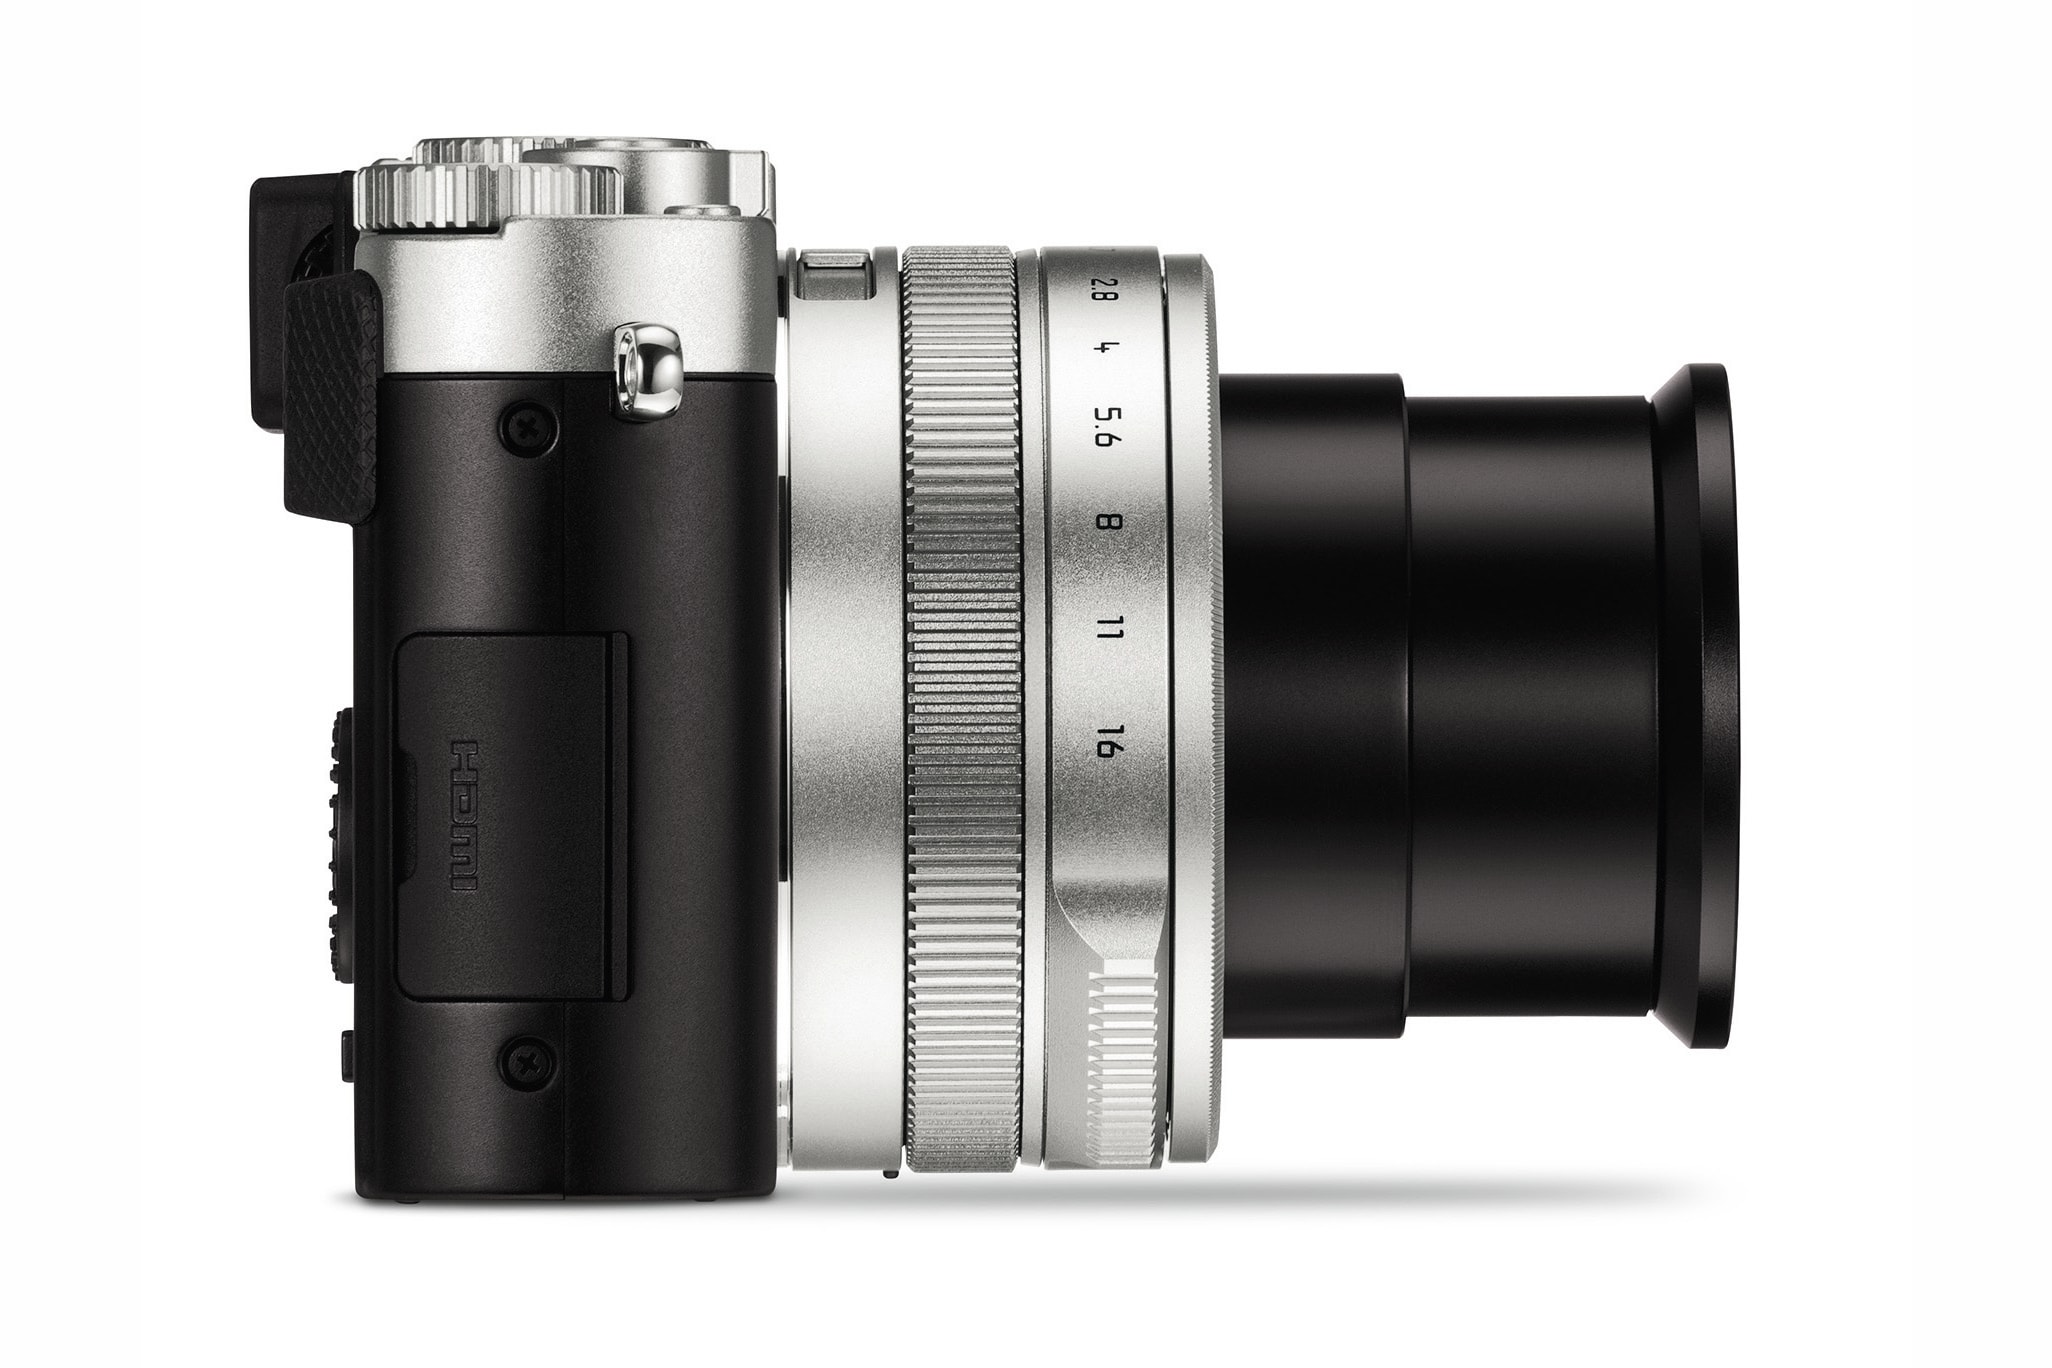 日常便攜之作－Leica 推出全新相機 D-Lux 7